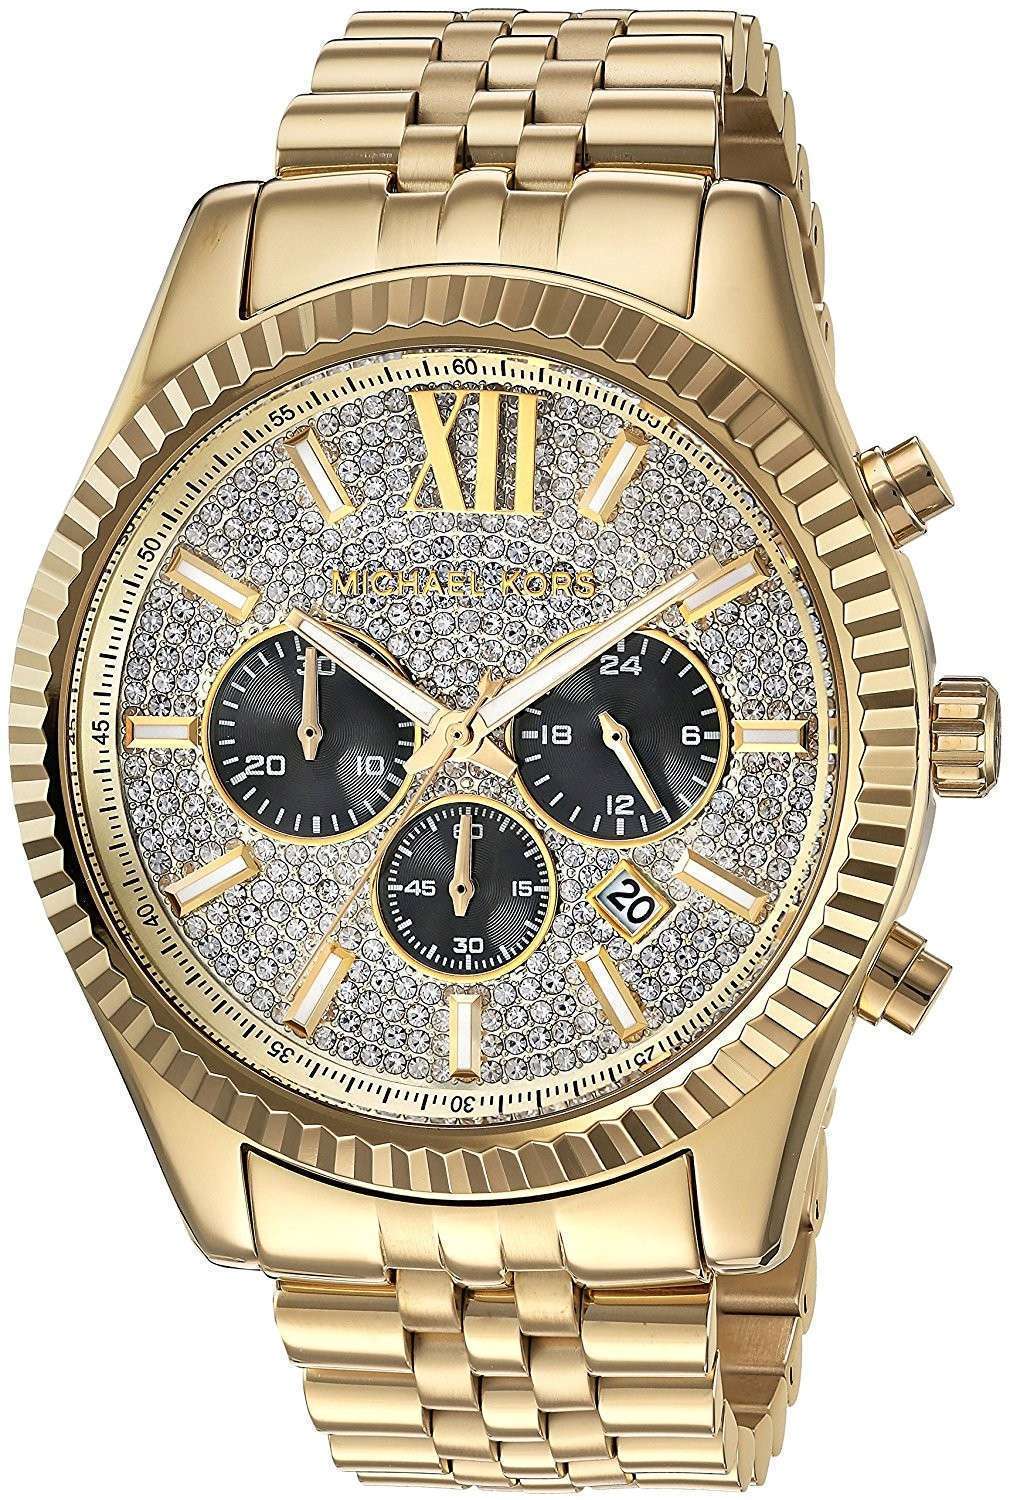 michael kors lexington chronograph men's watch